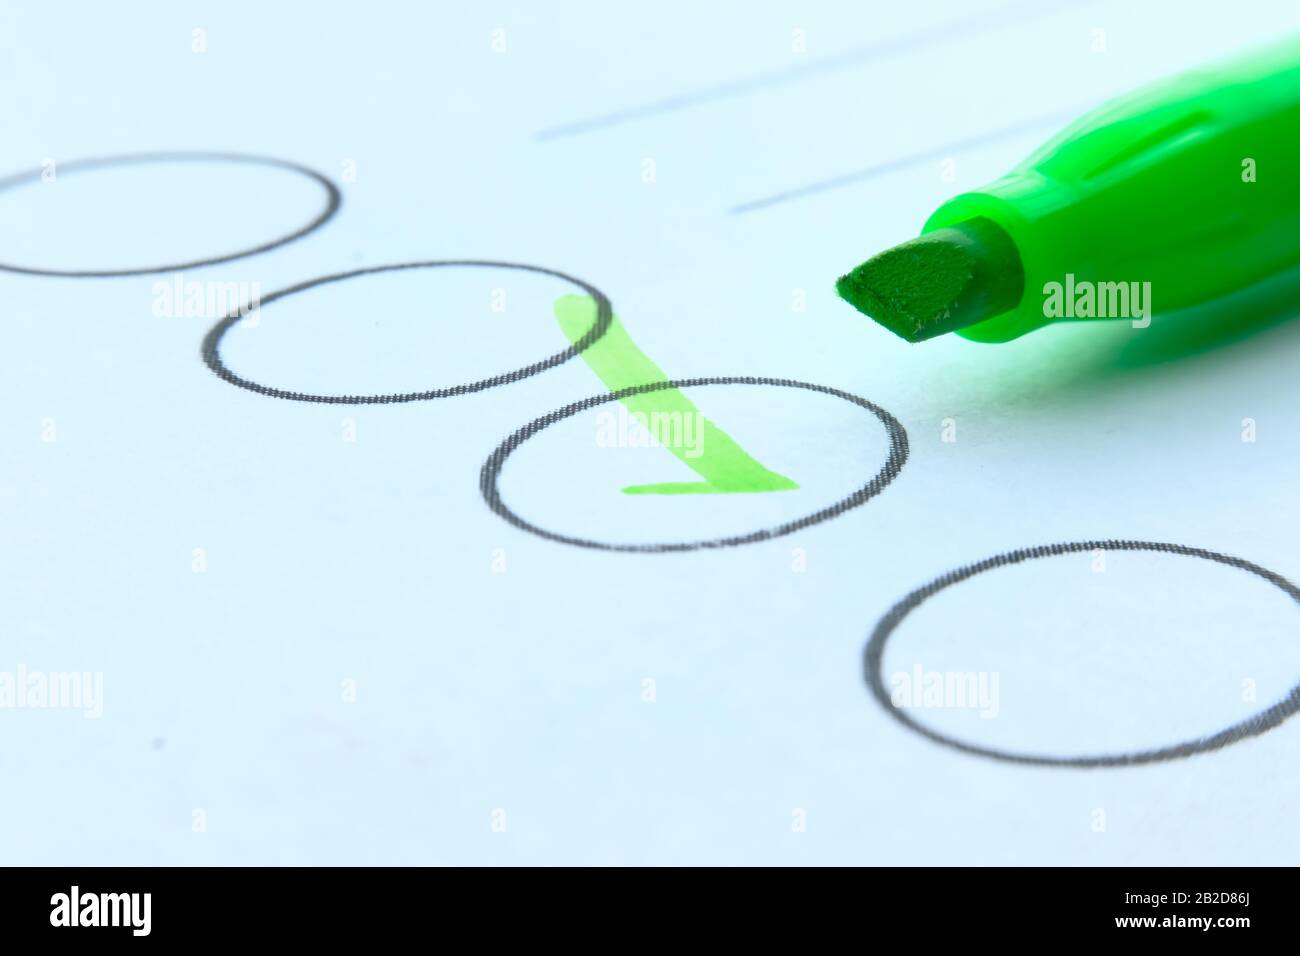 Chiudere il segno di spunta con la penna verde sulla carta Foto Stock